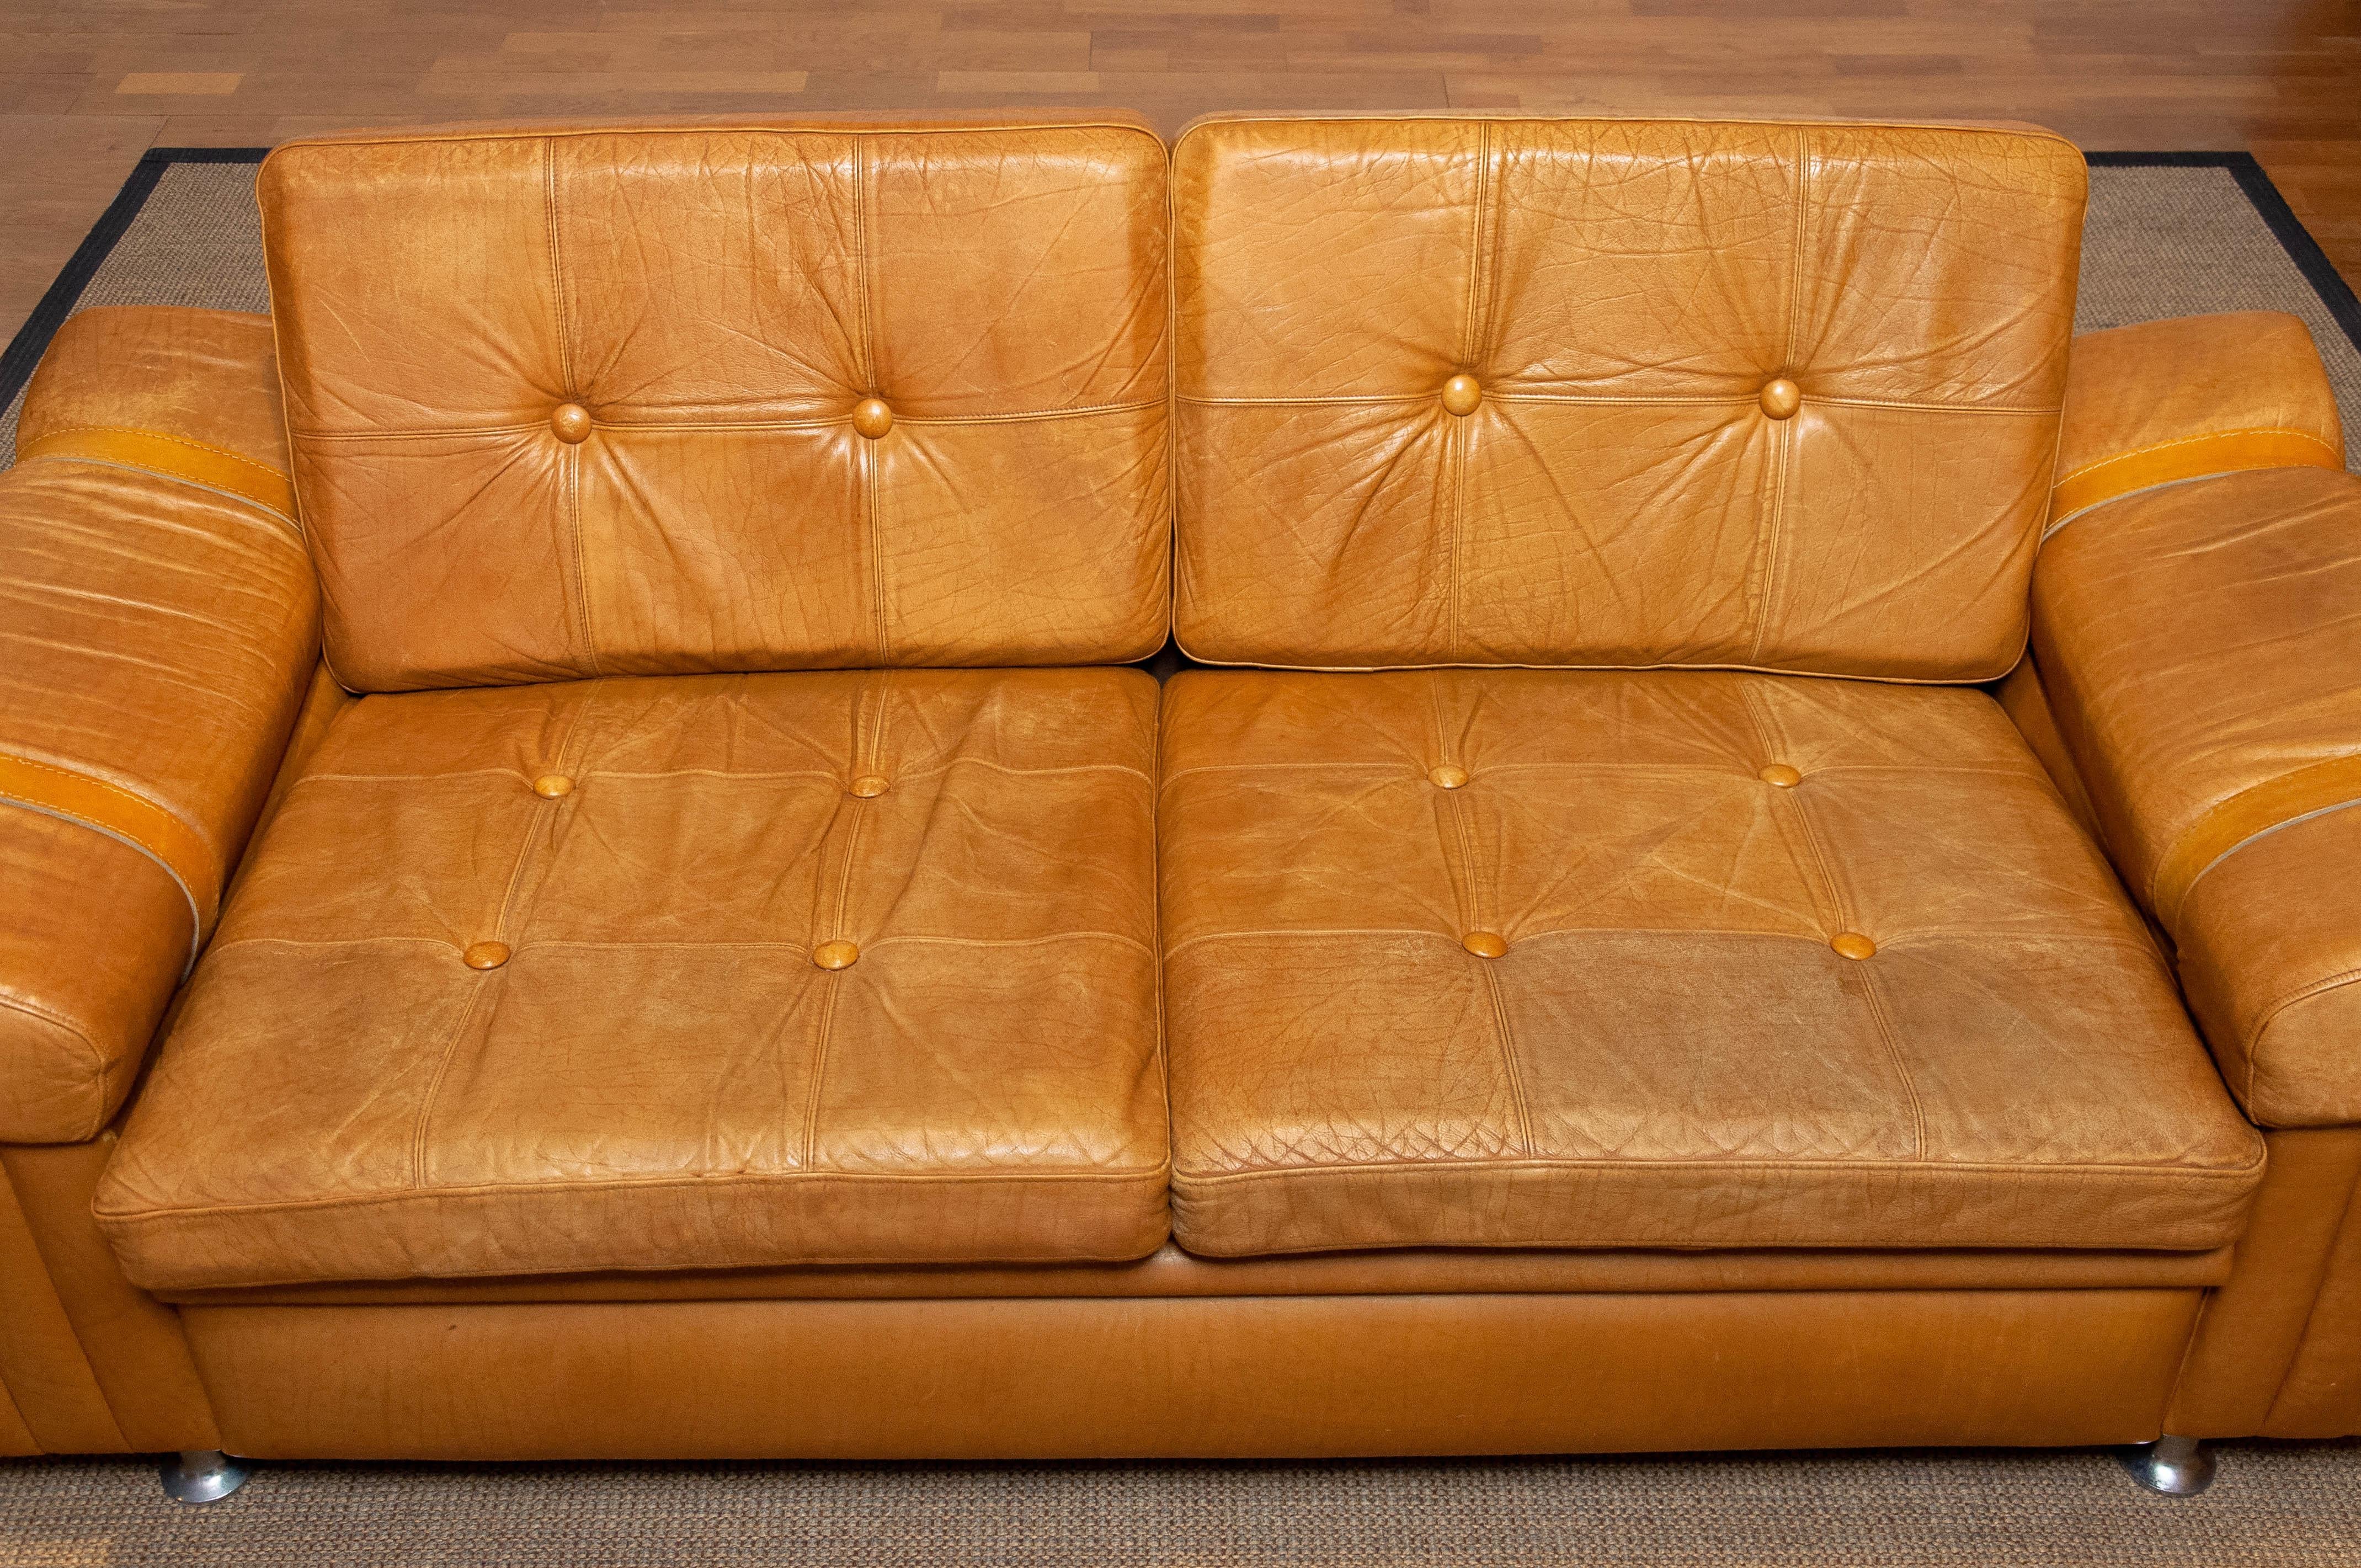 Schönes brutalistisches Zweisitzersofa aus kamelfarbenem Leder. Dieses skandinavische Sofa erweckt aufgrund der verwendeten Materialien, des Designs und der Qualität den Eindruck, dass es ein schwedisches Produkt der Firma Norell AB ist, aber wir